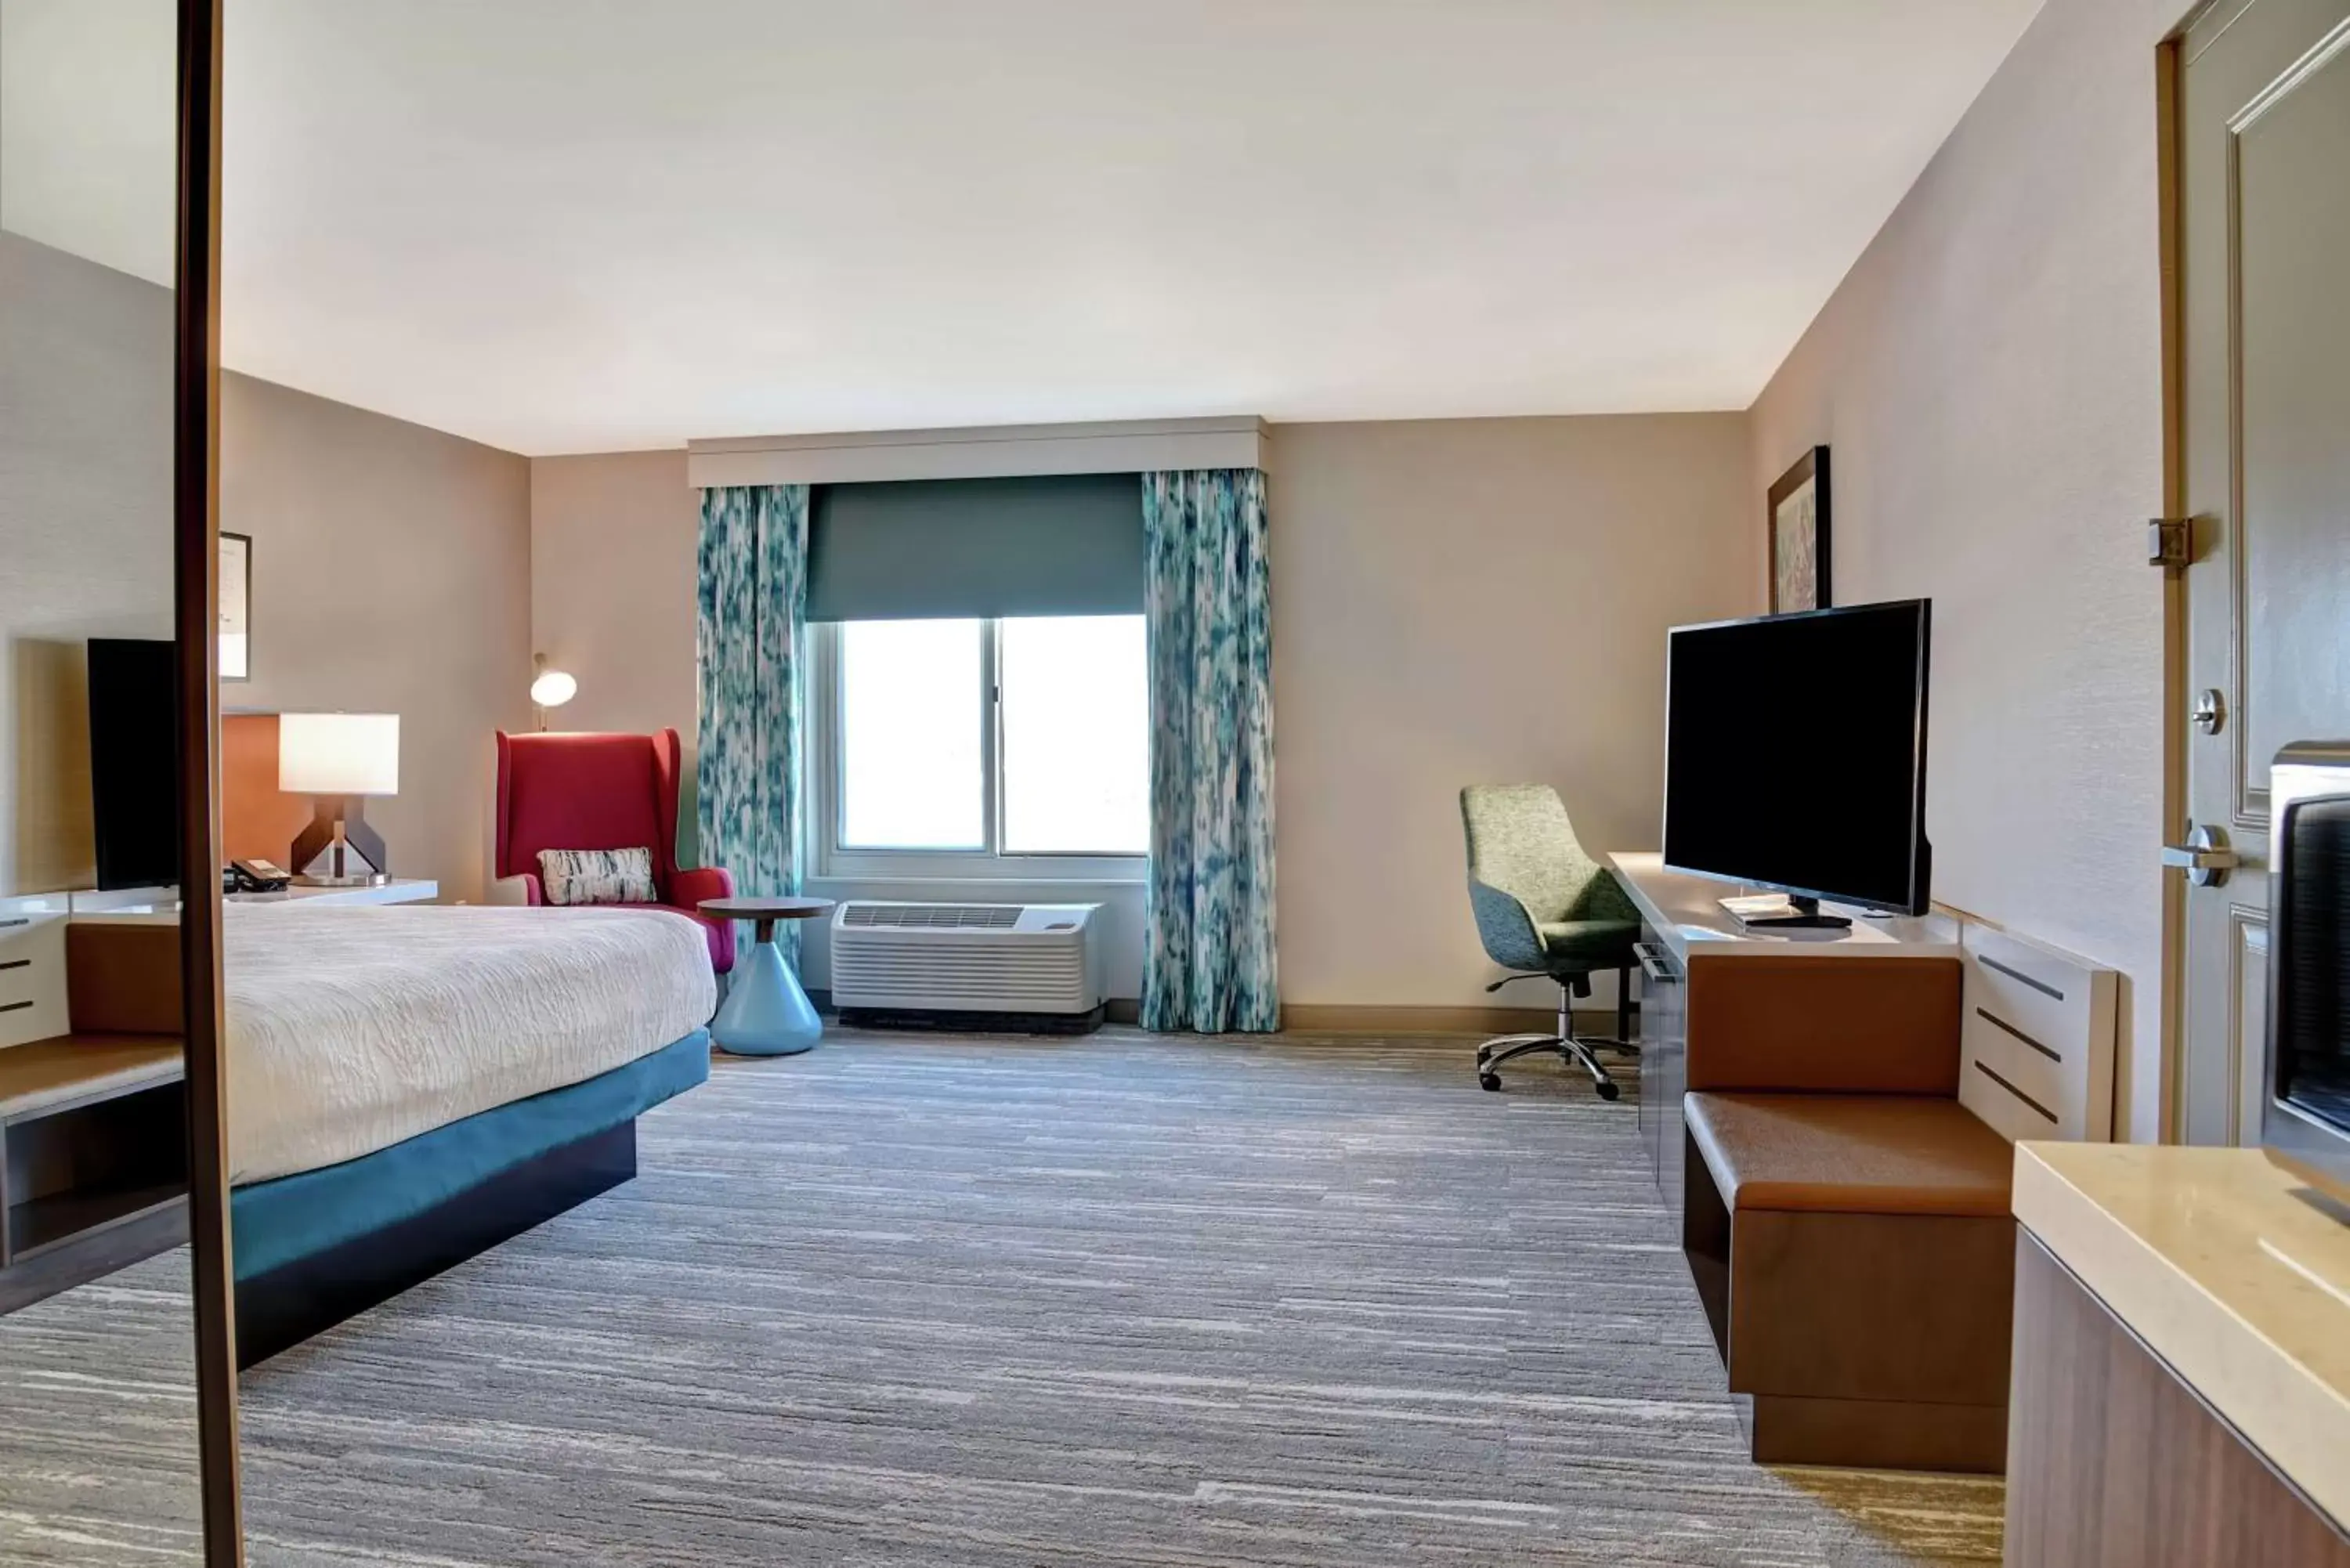 Bedroom, TV/Entertainment Center in Hilton Garden Inn Kansas City/Kansas